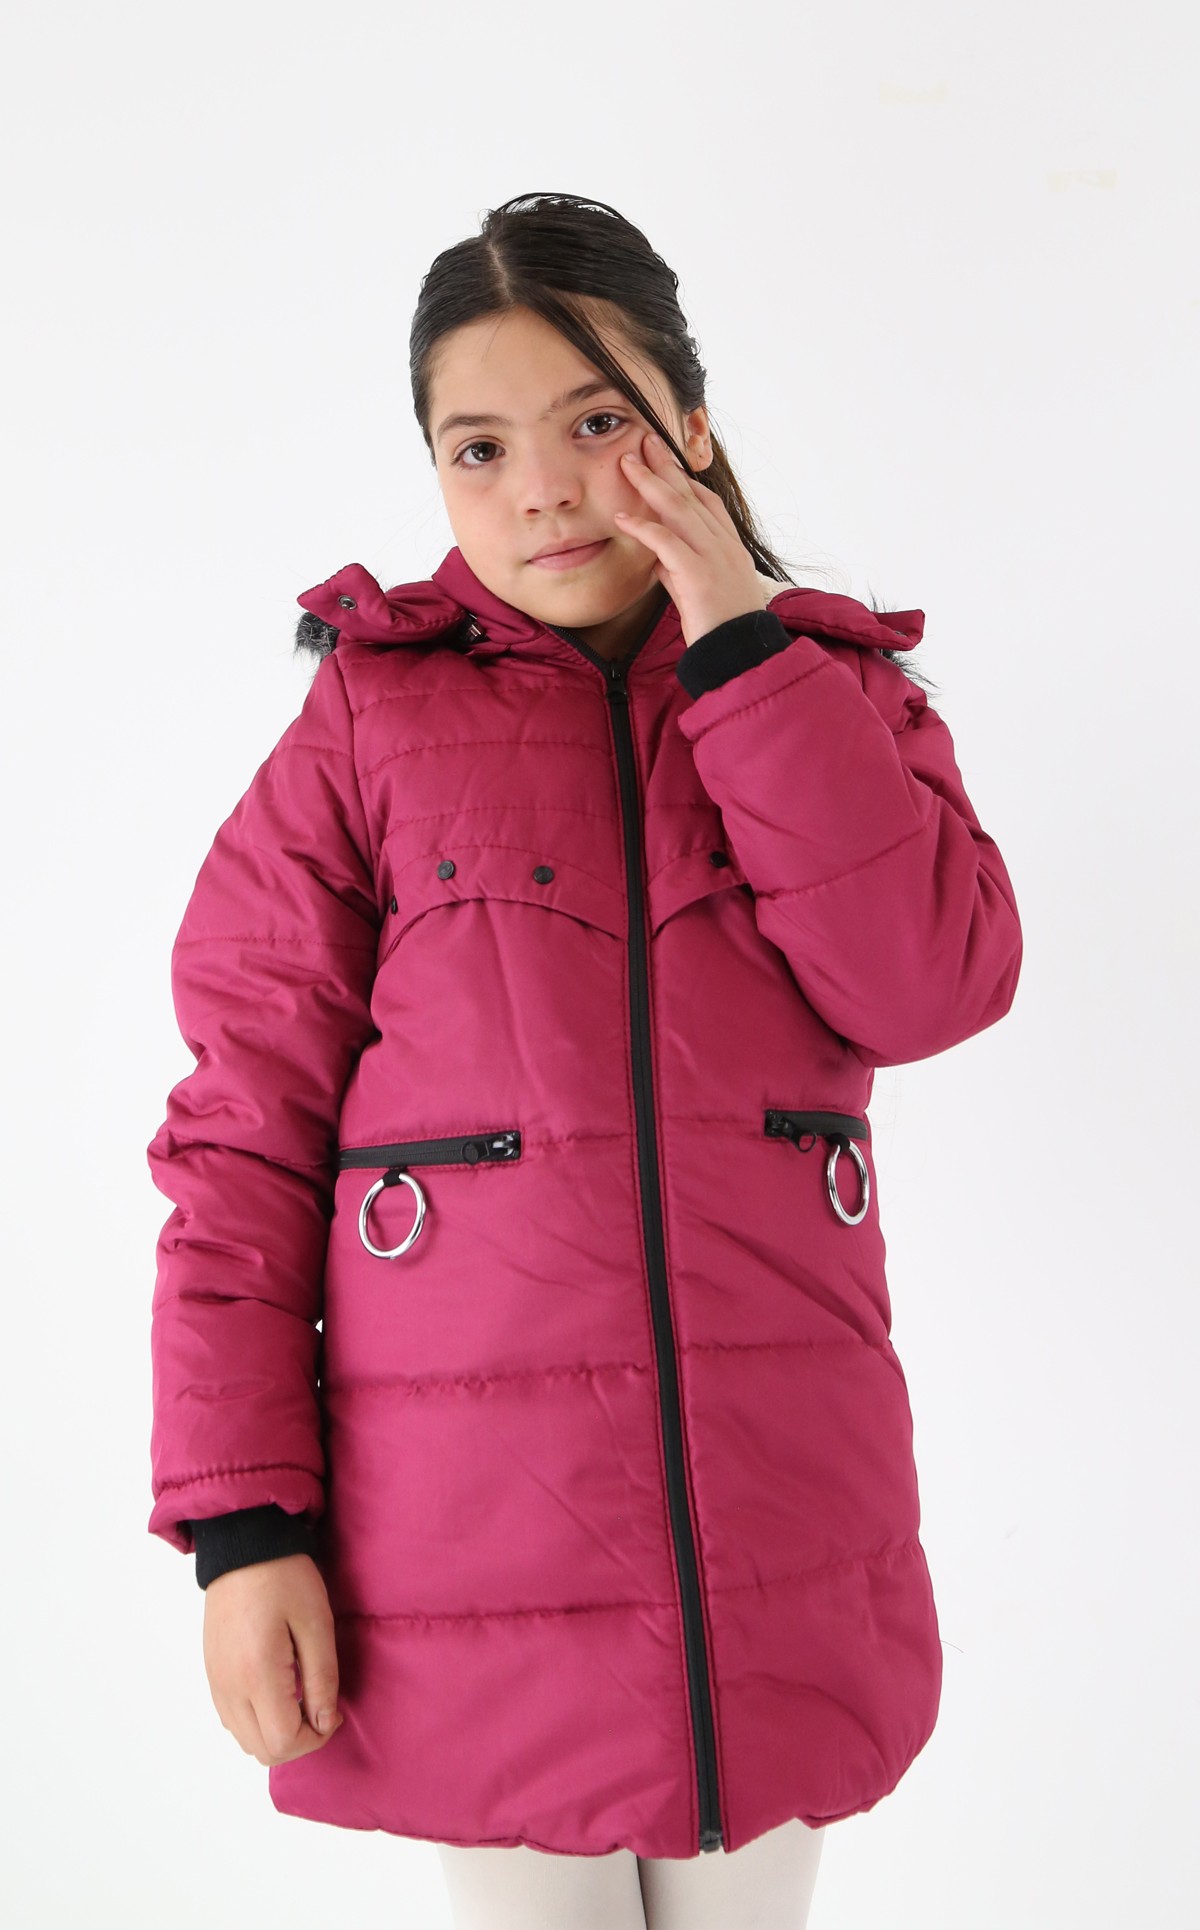 Polarlı Kışlık Kız Çocuk Montu - Starlet - Fusya